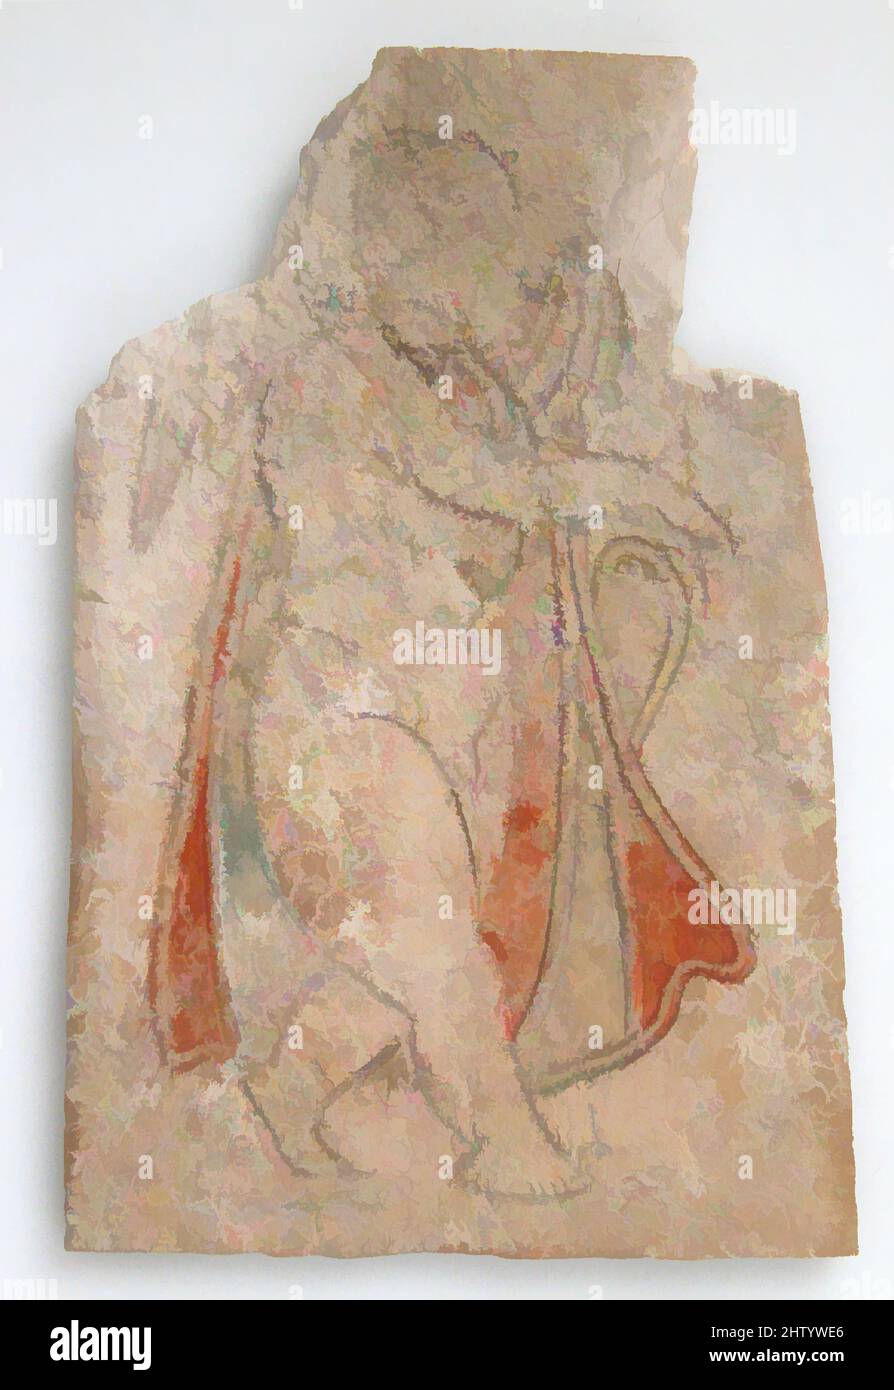 Arte ispirata da targa con un Eros, 4th–5th secolo, fatta in Egitto bizantino, copto, osso, tracce di vernice rossa e blu, totale: 3 9/16 x 2 3/8 x 3/16 pollici. (9,1 x 6 x 0,4 cm), avorio-osso, placche di osso sono stati usati per decorare i divani, le cassettiere ed altri mobili. Alcuni sono stati scolpiti in, opere classiche modernizzate da Artotop con un tuffo di modernità. Forme, colore e valore, impatto visivo accattivante sulle emozioni artistiche attraverso la libertà delle opere d'arte in modo contemporaneo. Un messaggio senza tempo che persegue una nuova direzione selvaggiamente creativa. Artisti che si rivolgono al supporto digitale e creano l'NFT Artotop Foto Stock